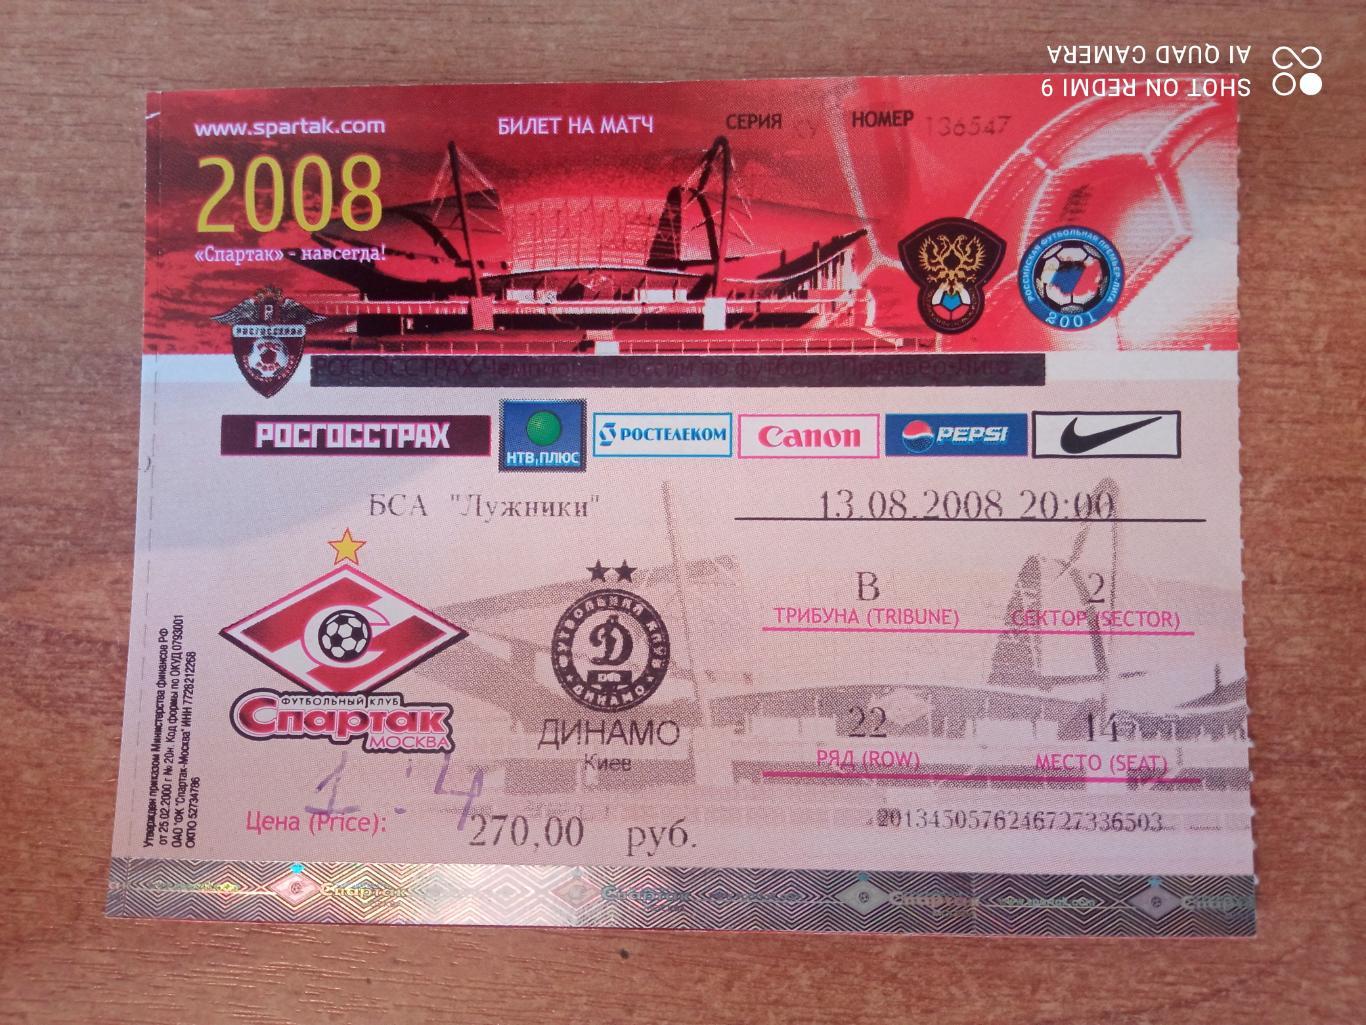 Билет:13.08.2008 Спартак (Москва)-Динамо(Киев)